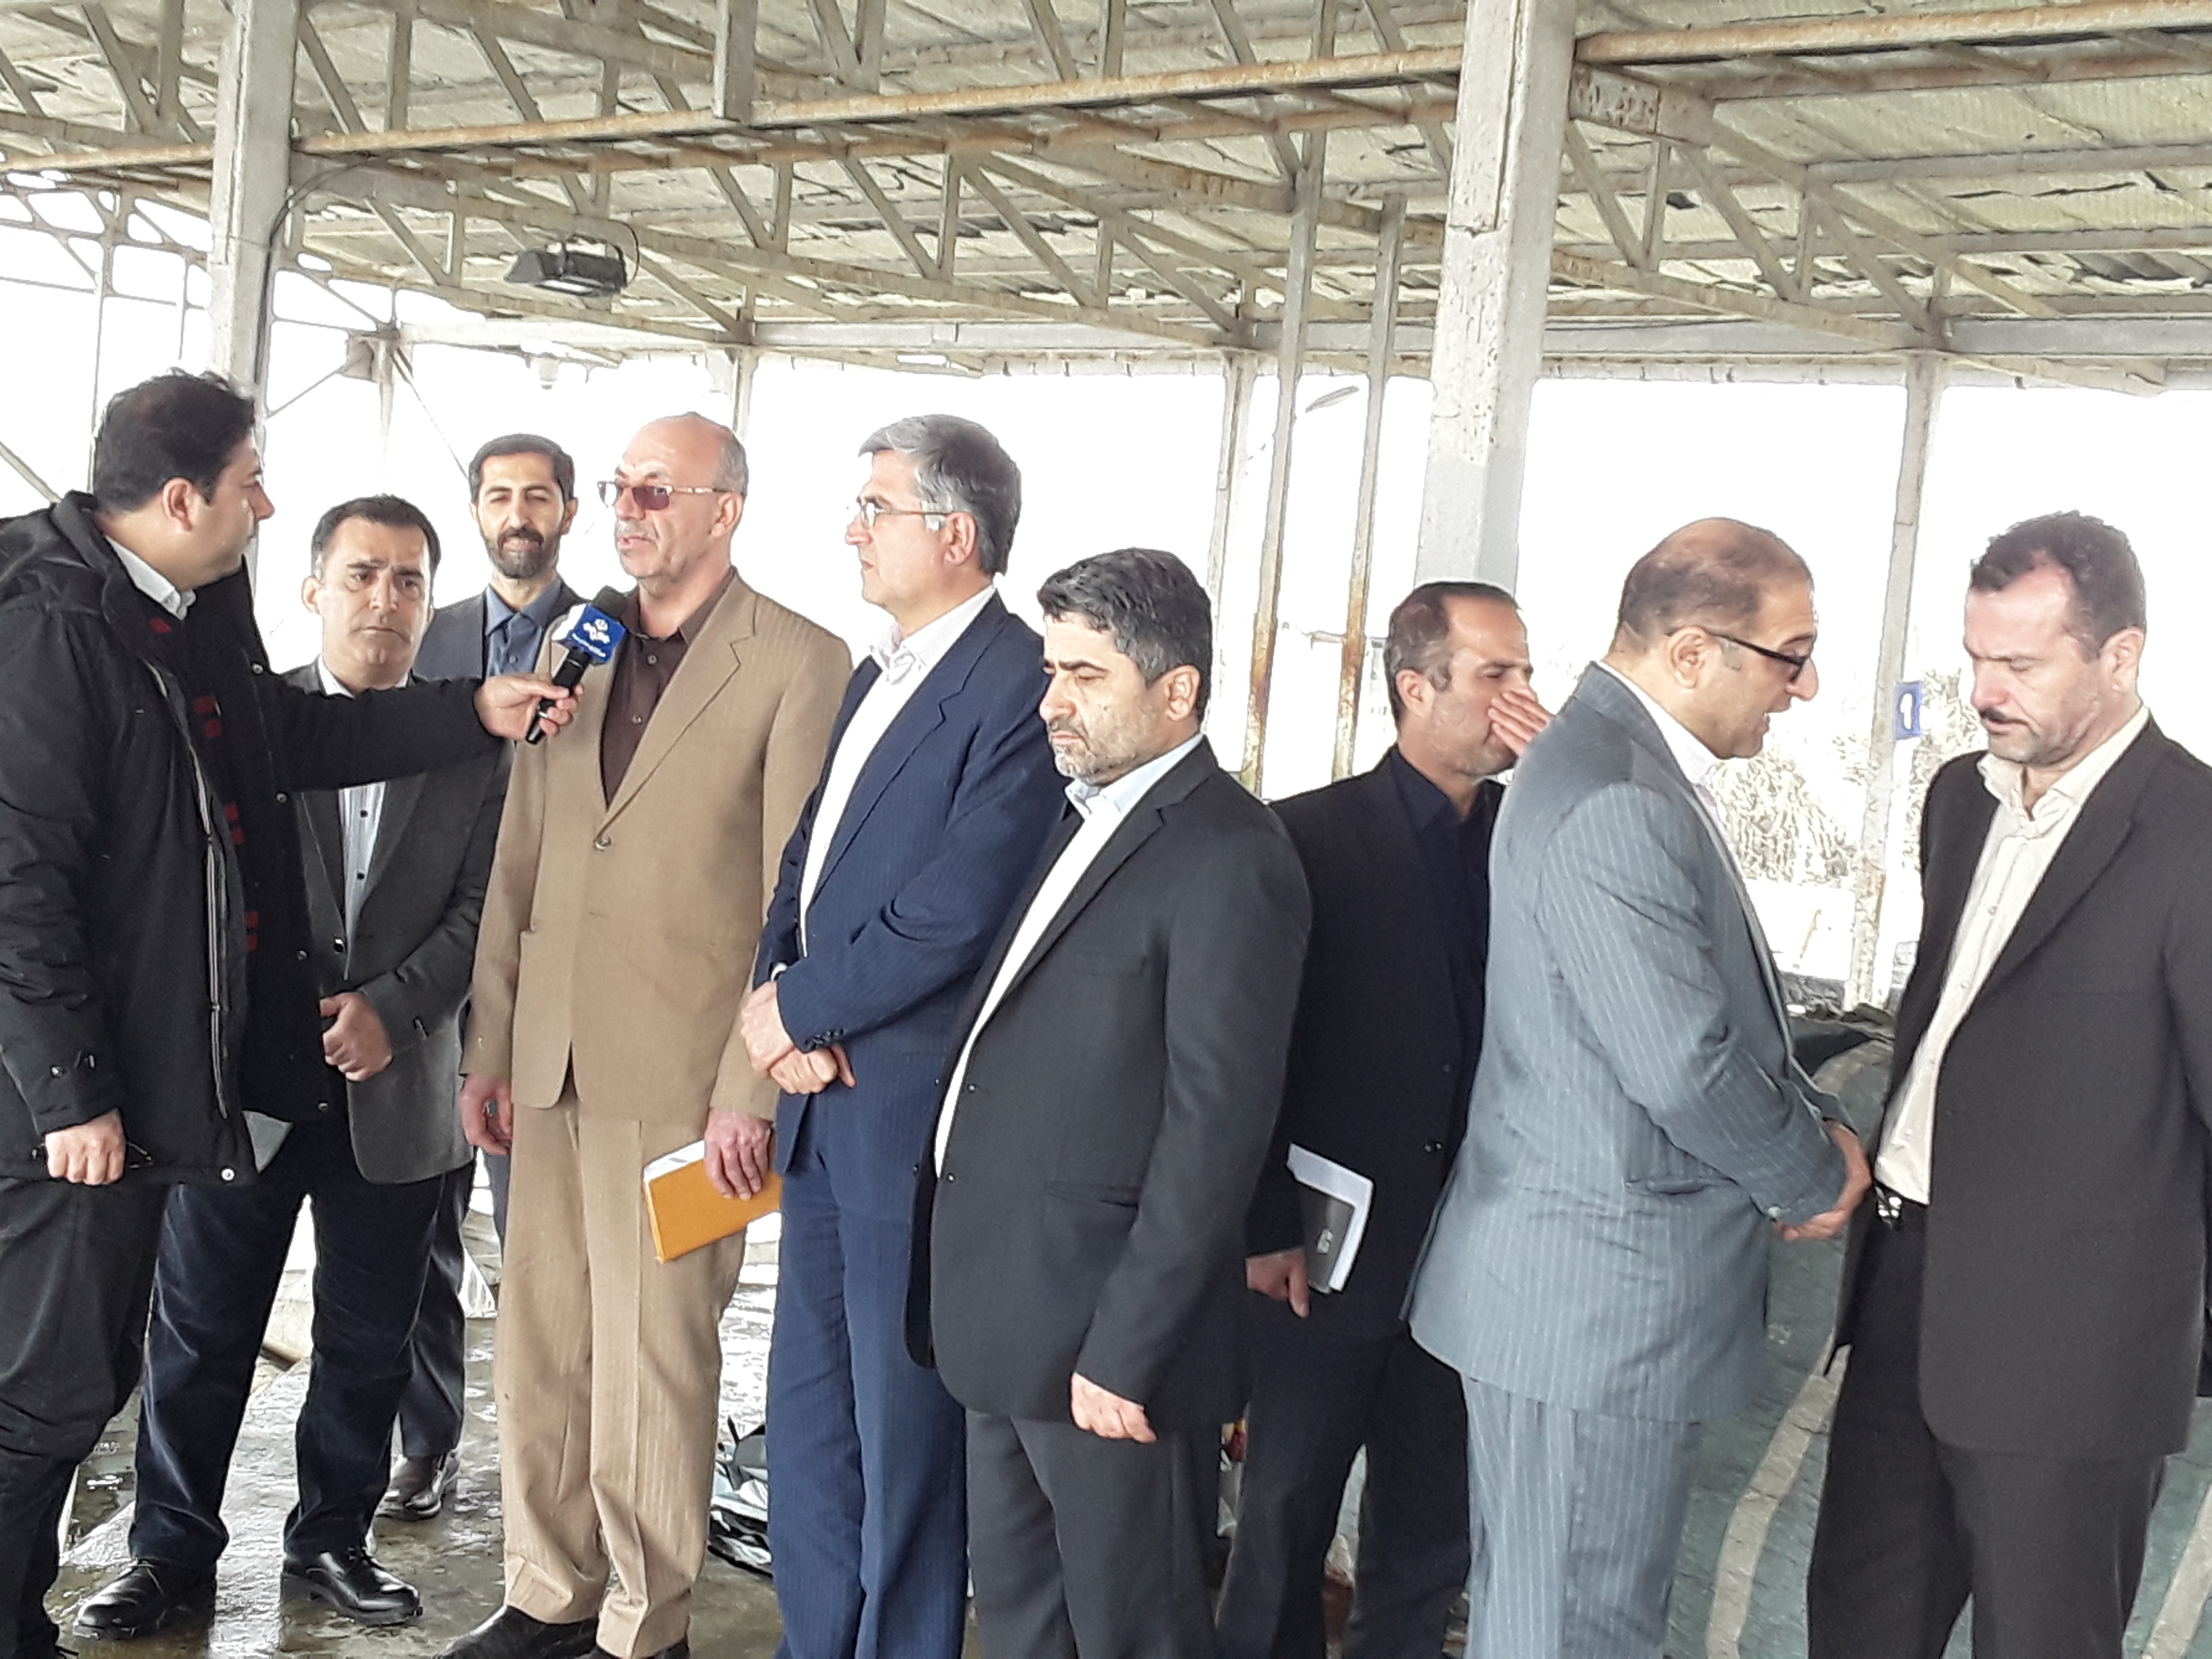  رئیس سازمان شیلات ایران دربازدیدازمزرعه پرورش ماهی قزل آلا درآمل گفت: تولید آبزیان از ۱.۲ میلیون تن فراتر رفت